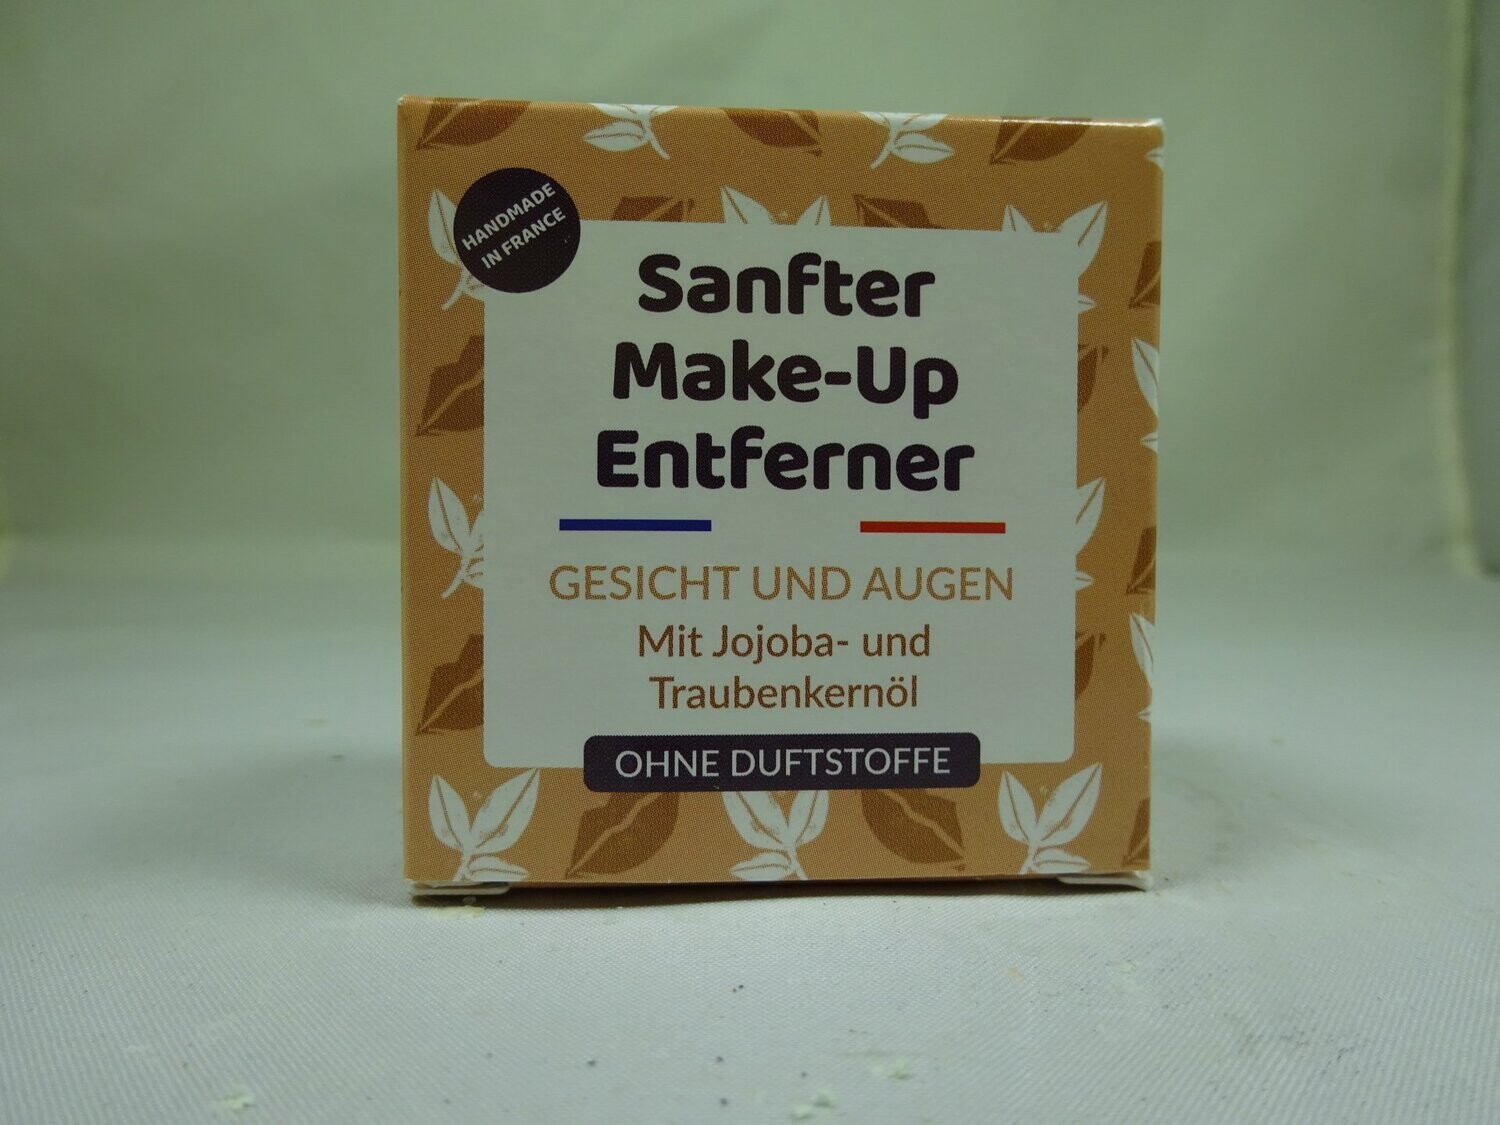 Sanfter Make-up Entferner